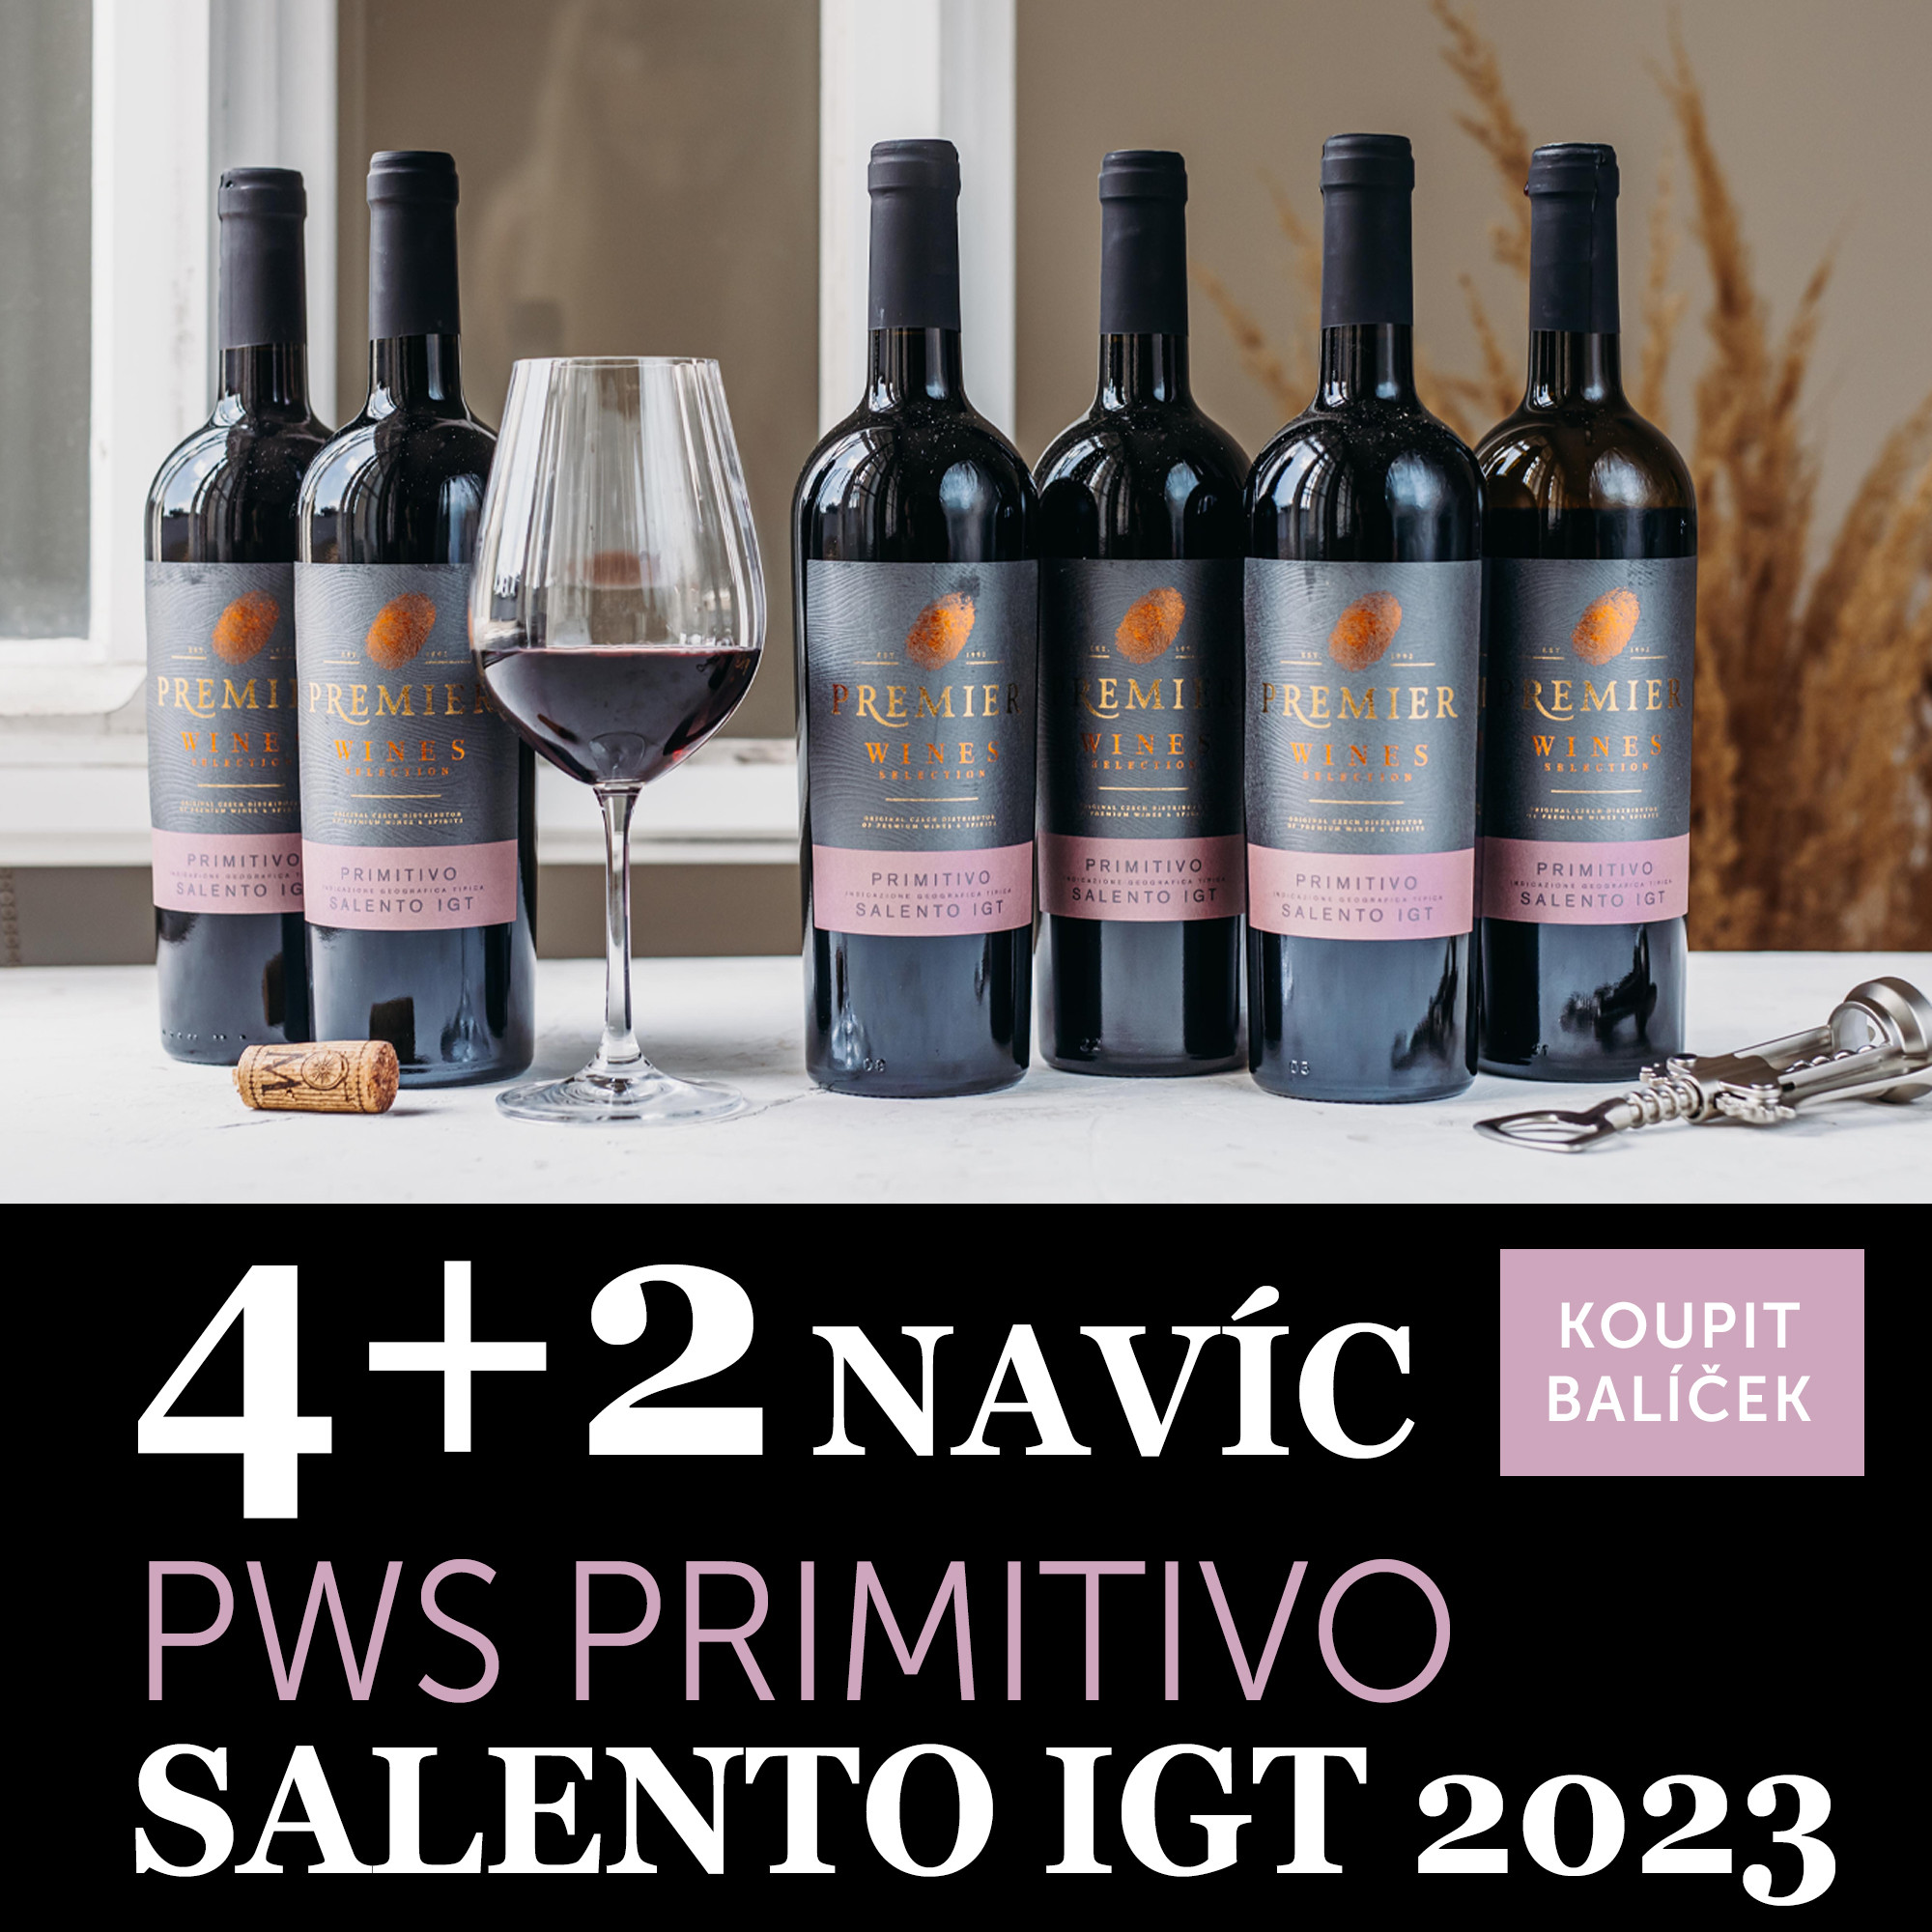 Víno měsíce července - PWS Primitivo Salento IGT 2023 4+2 navíc